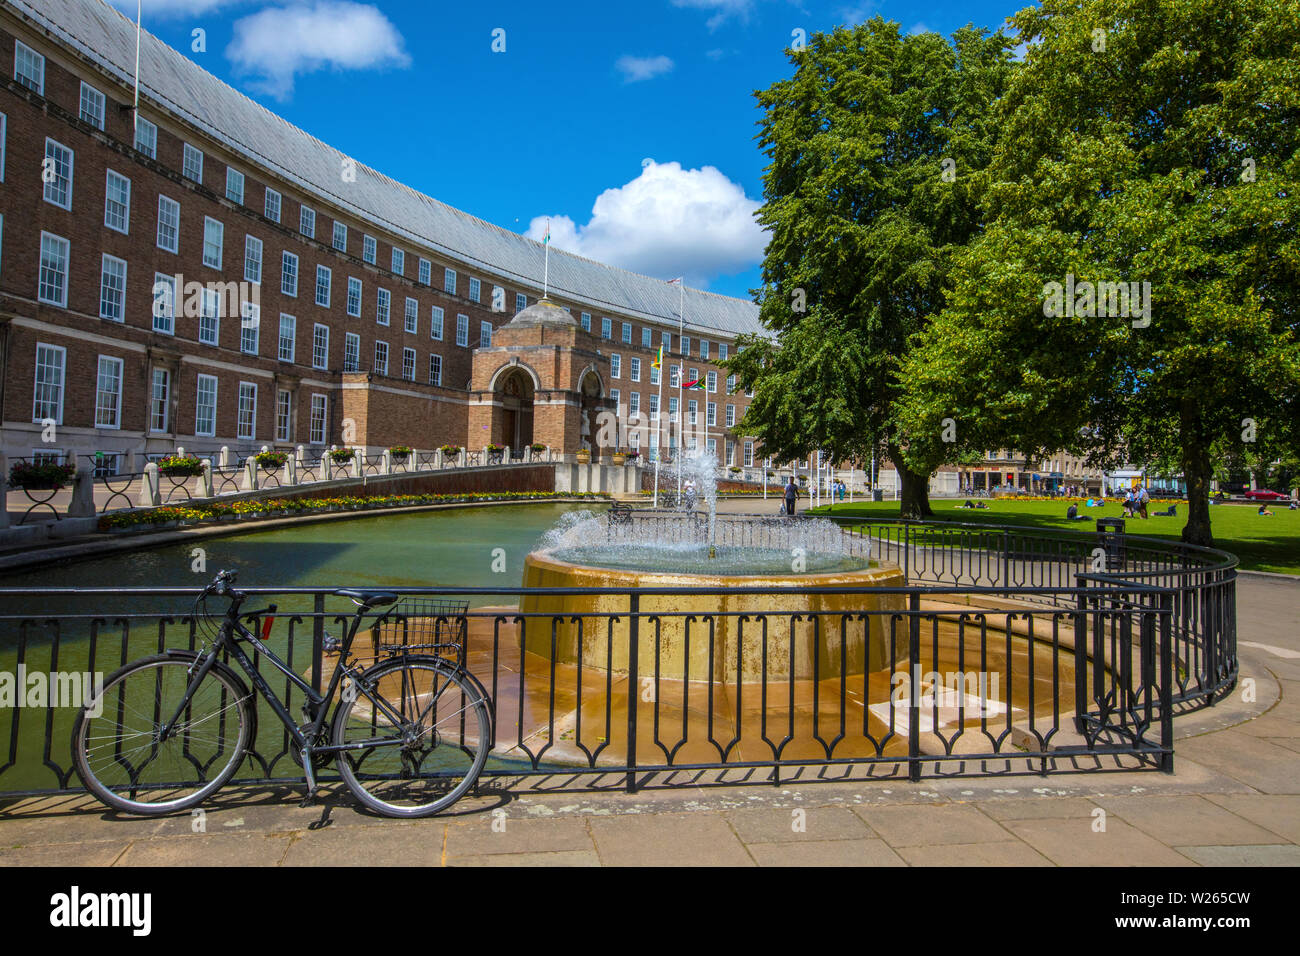 Bristol, Großbritannien - 30.Juni 2019: Ein Blick auf die Fassade des Rathauses, die früher als Rat Haus bekannt, in der historischen Stadt Bristol in Großbritannien. Stockfoto